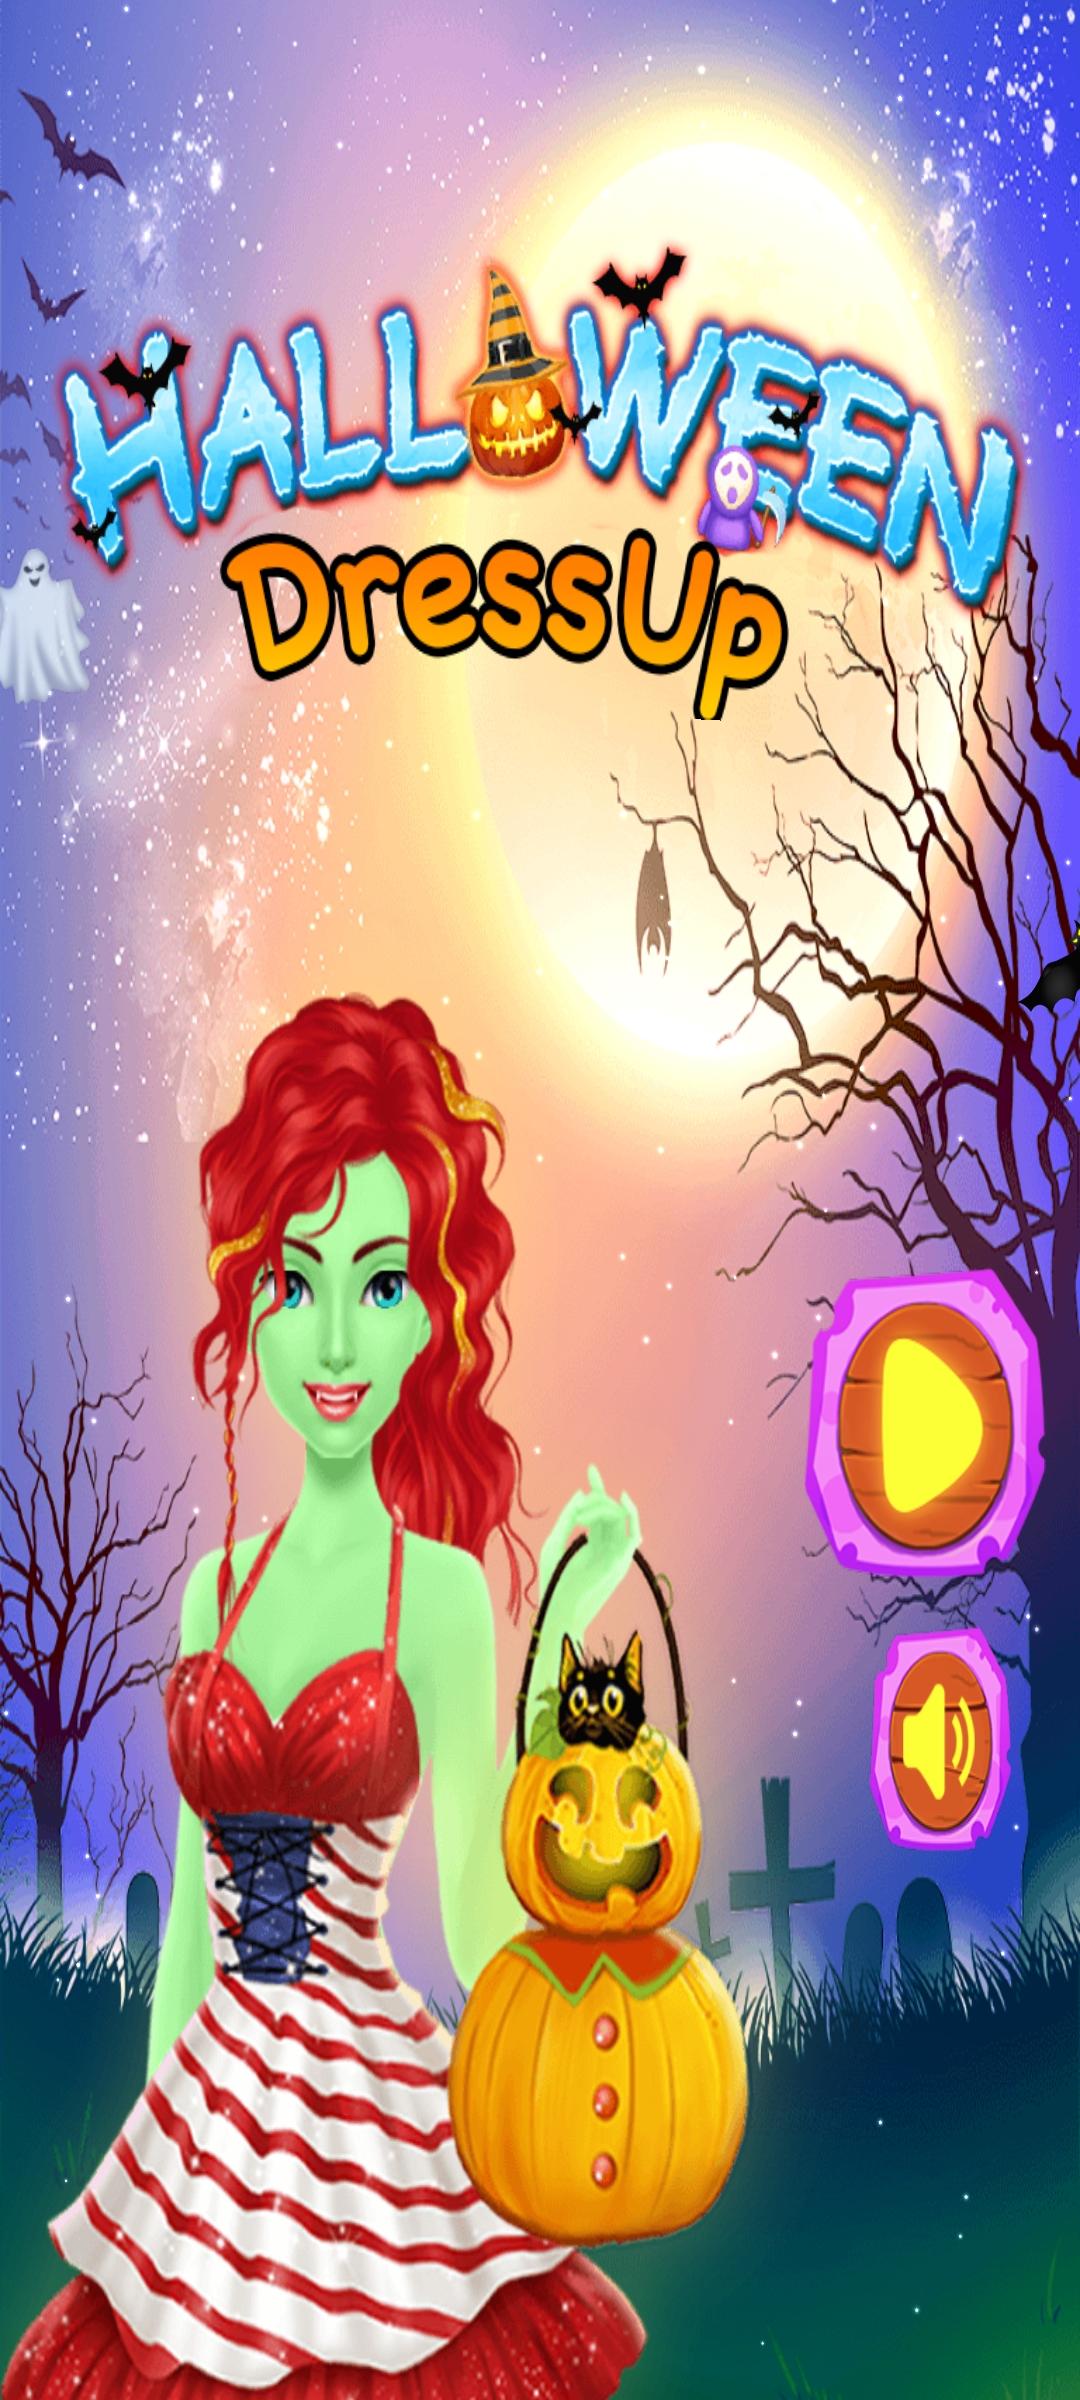 Download do APK de Happy Jogos de Salão de Beleza para Android